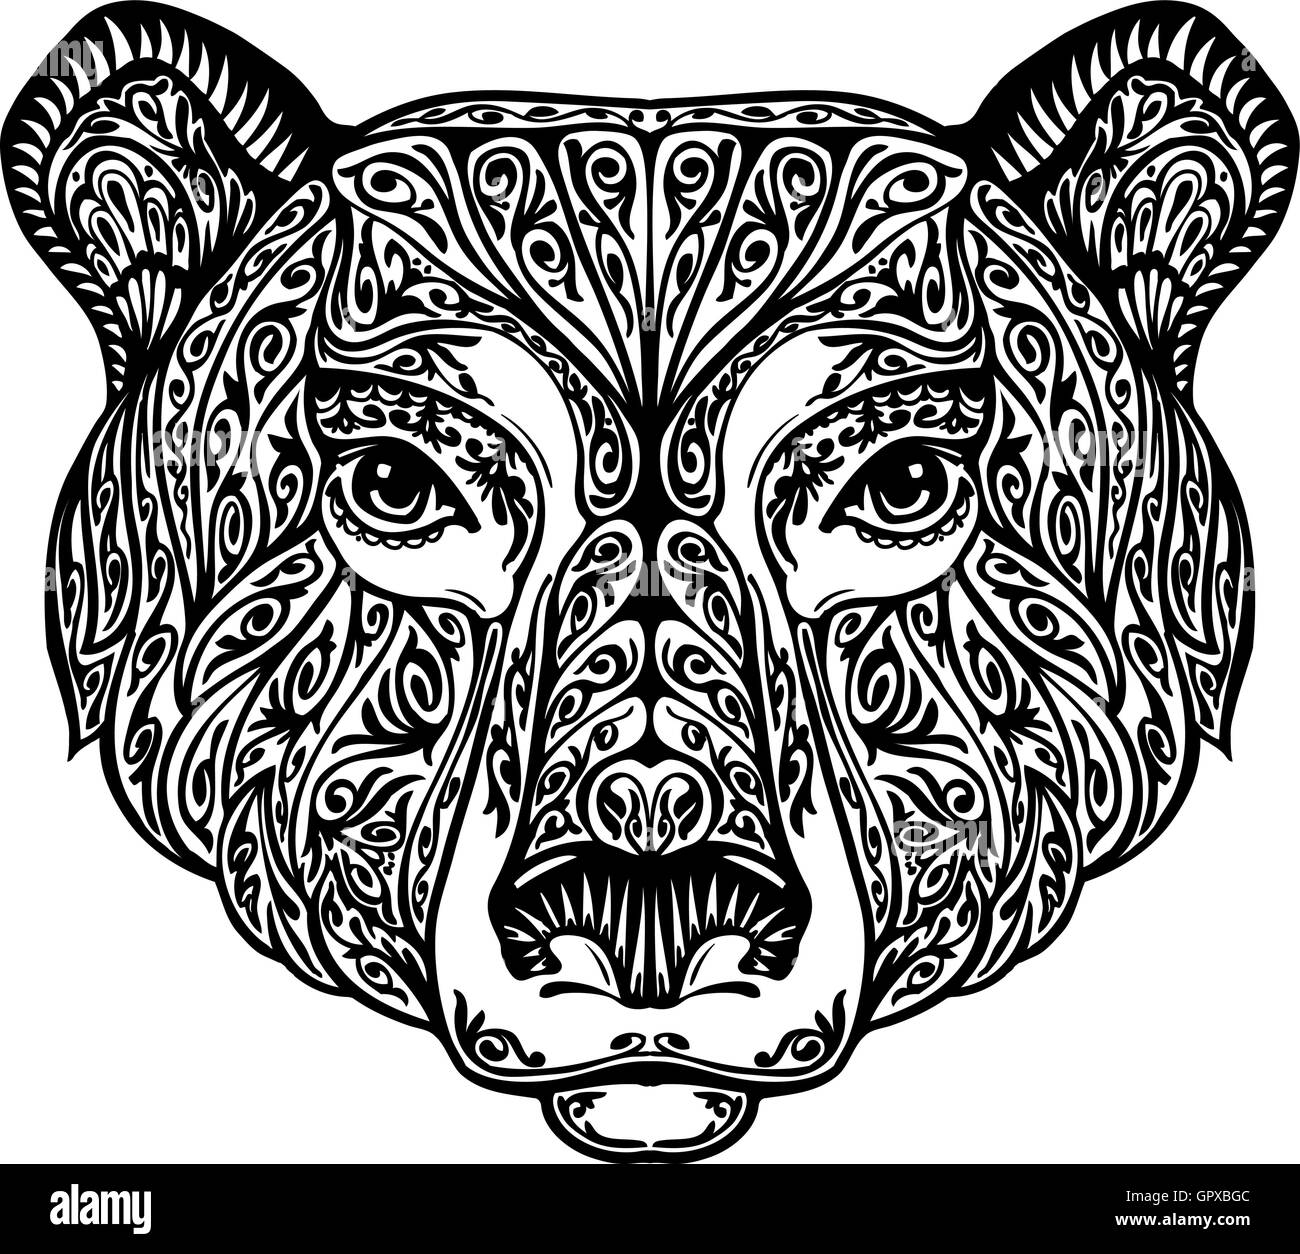 , Grizzly ou animal tribal peint ornement ethniques. Hand drawn vector illustration avec éléments floraux Illustration de Vecteur